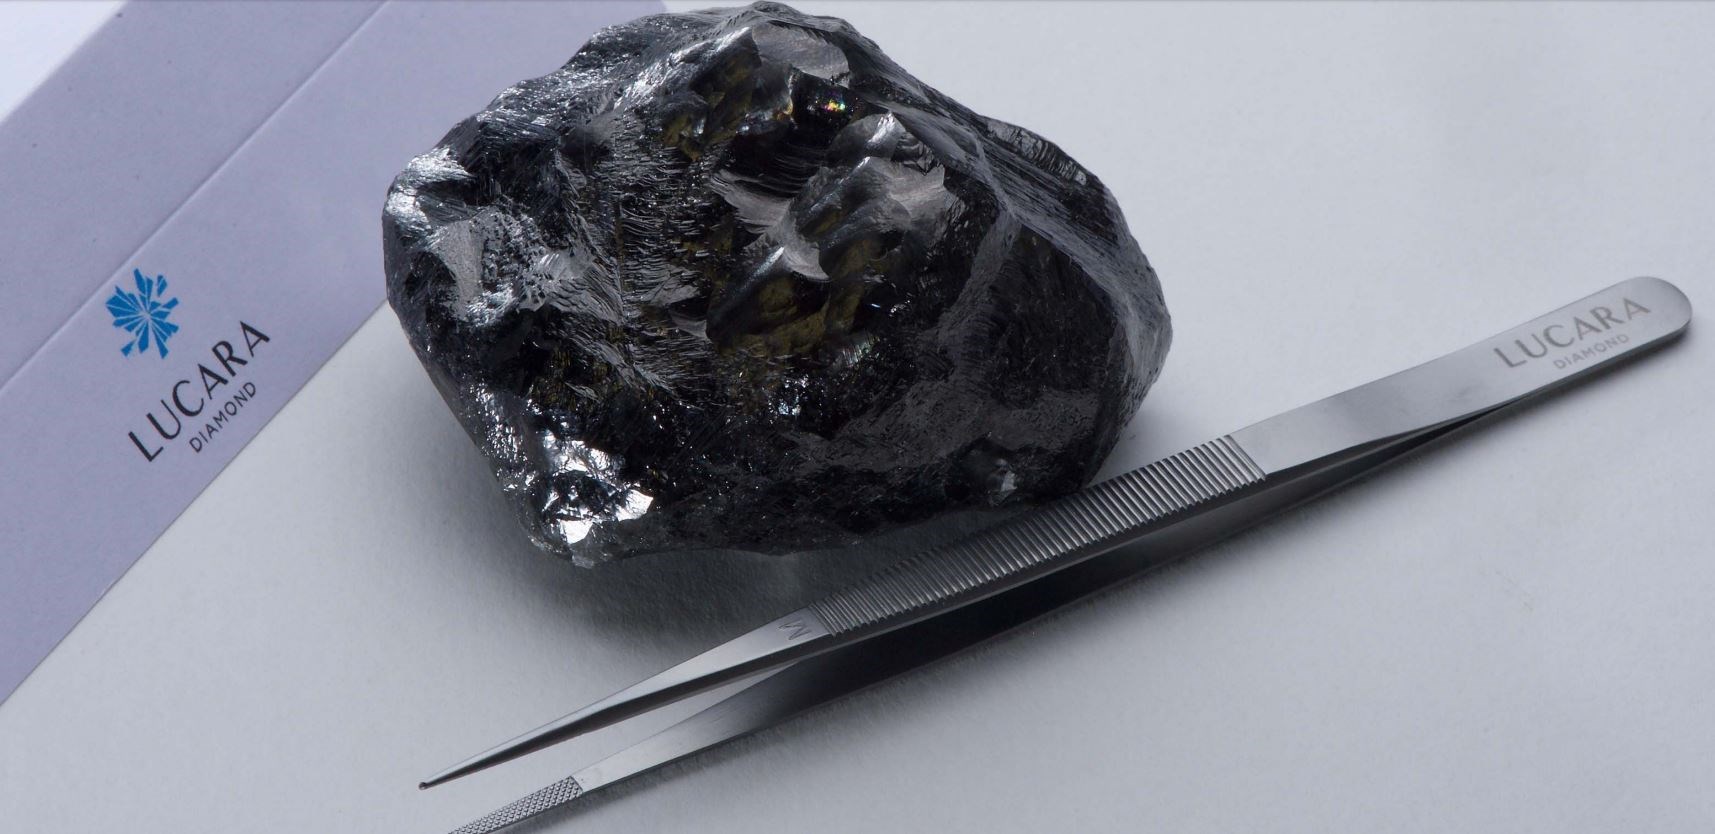 Βρέθηκε το δεύτερο μεγαλύτερο άκοπο διαμάντι στον κόσμο... - Φωτογραφία 2